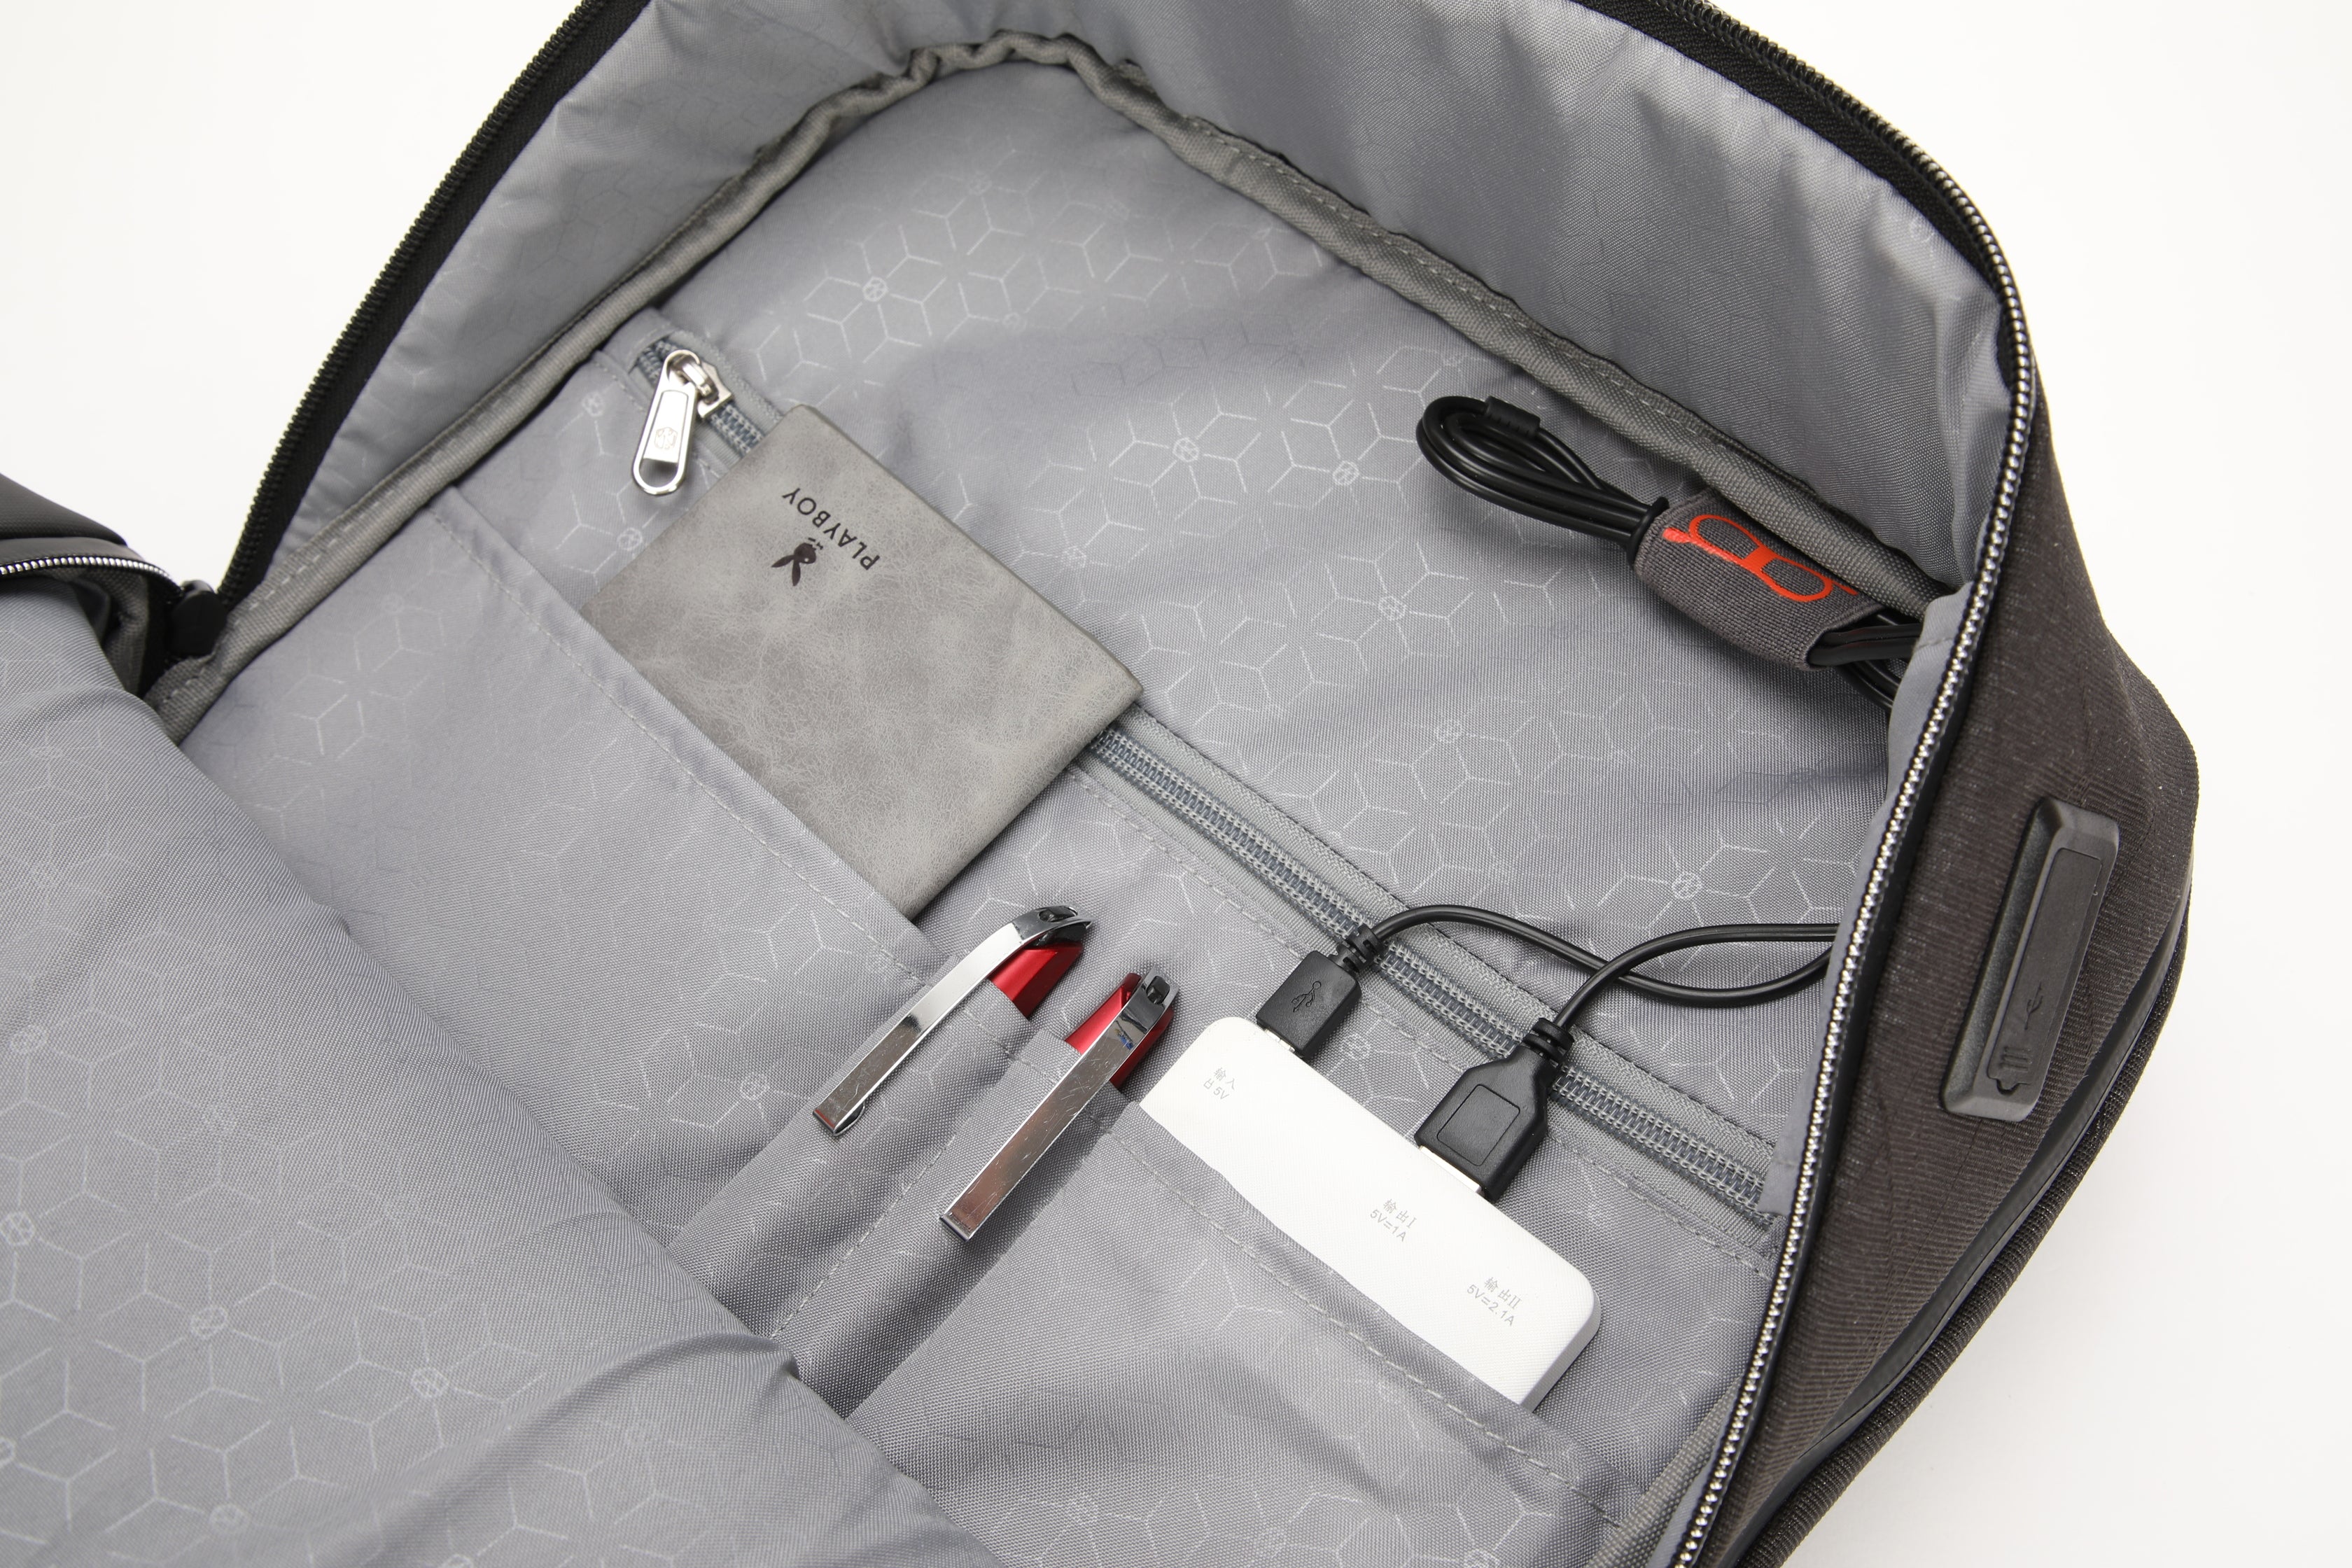 תיק גב עסקי ספורטיבי מוגן מים ללפטופ 15.6" מבית המותג AOKING עם טעינת USB